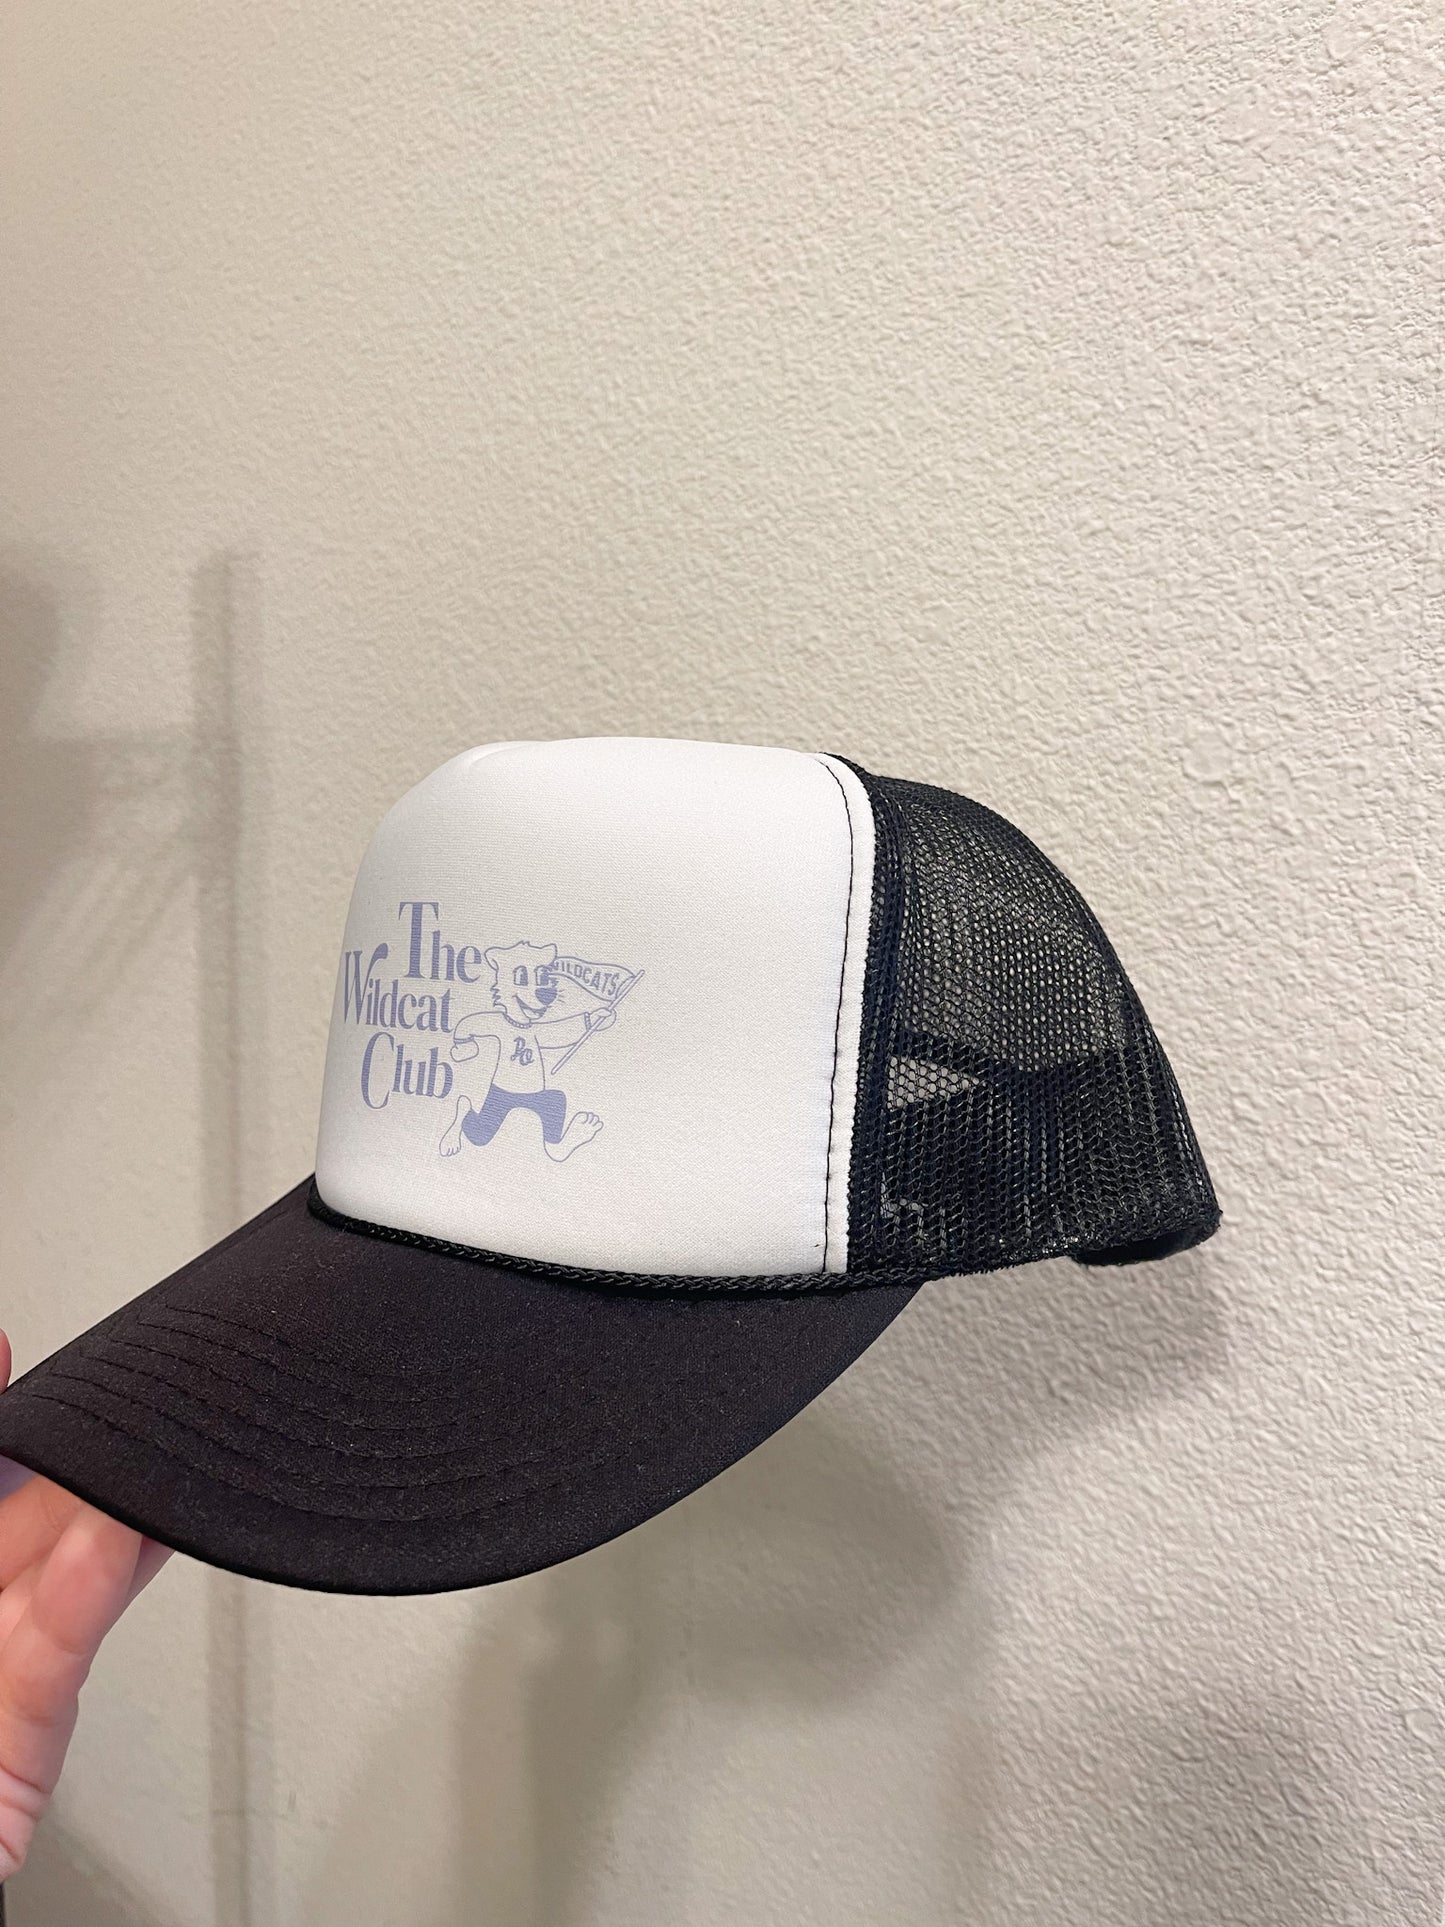 The Wildcat Club Trucker Hat